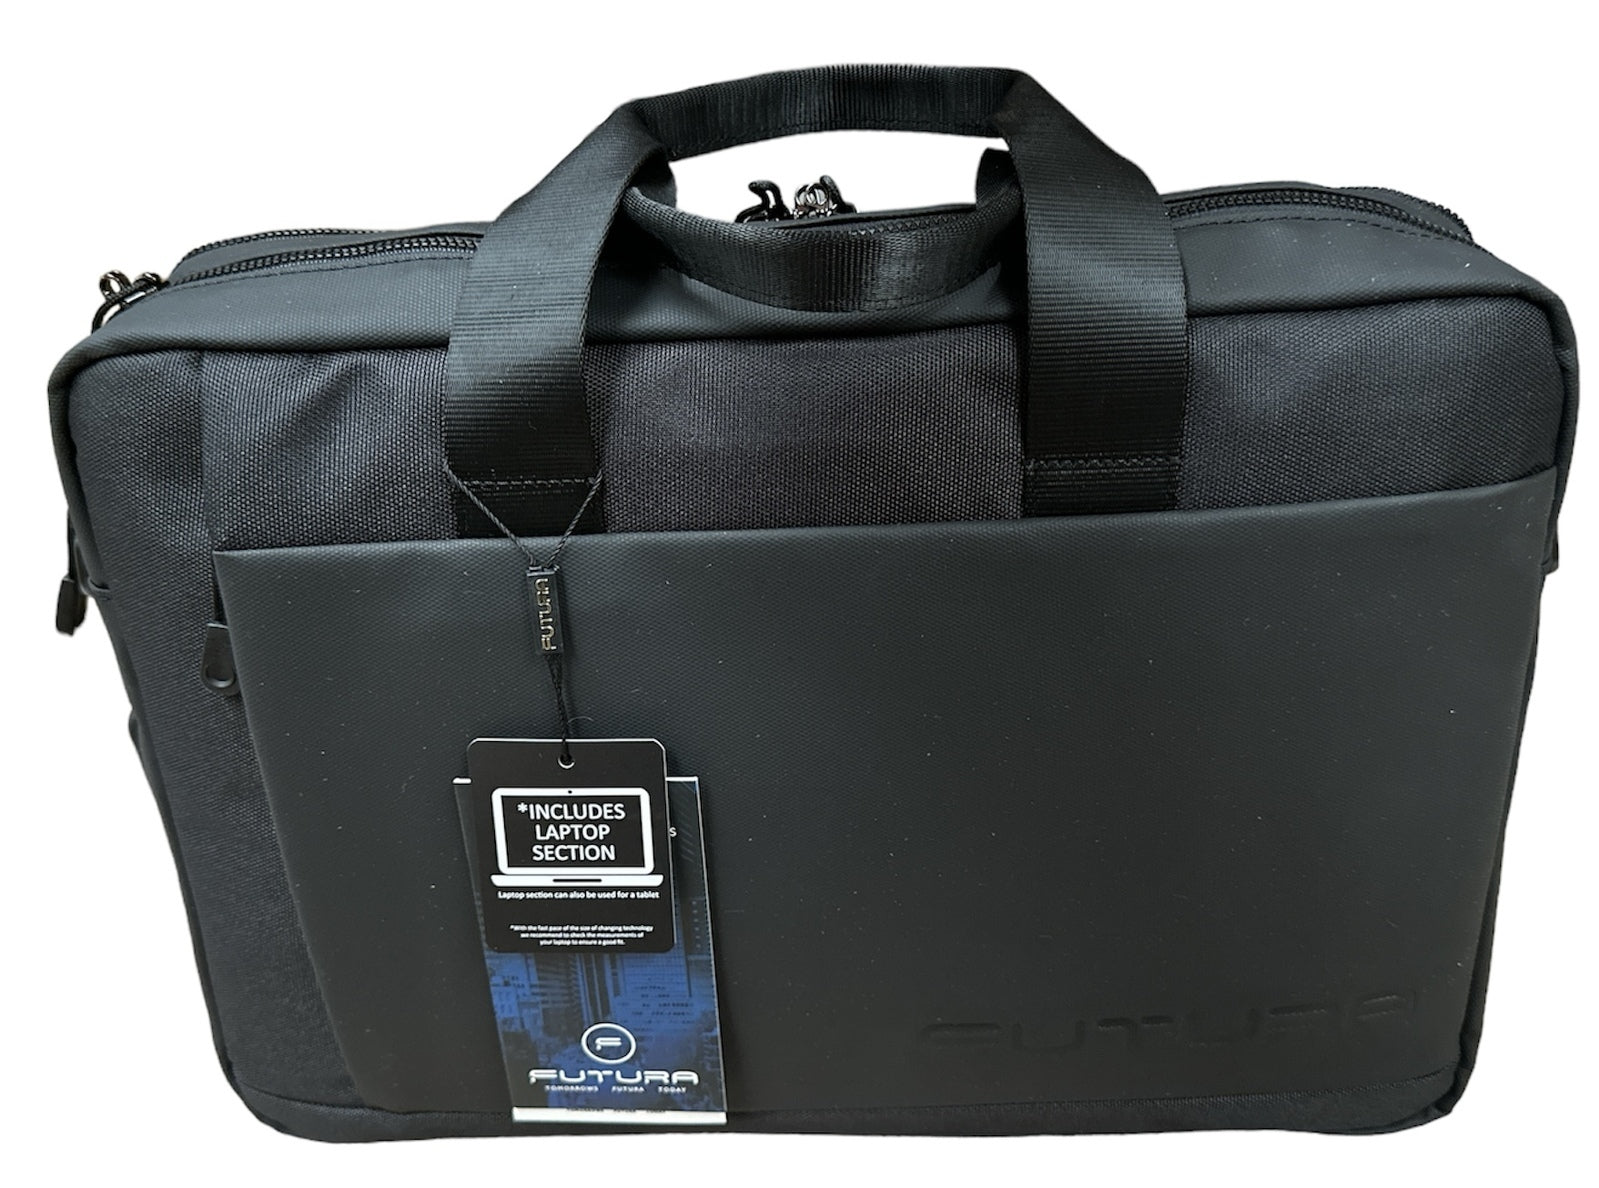 15"  Laptop Computer Bag Travel Work Messenger Bag w/USB Port - Black